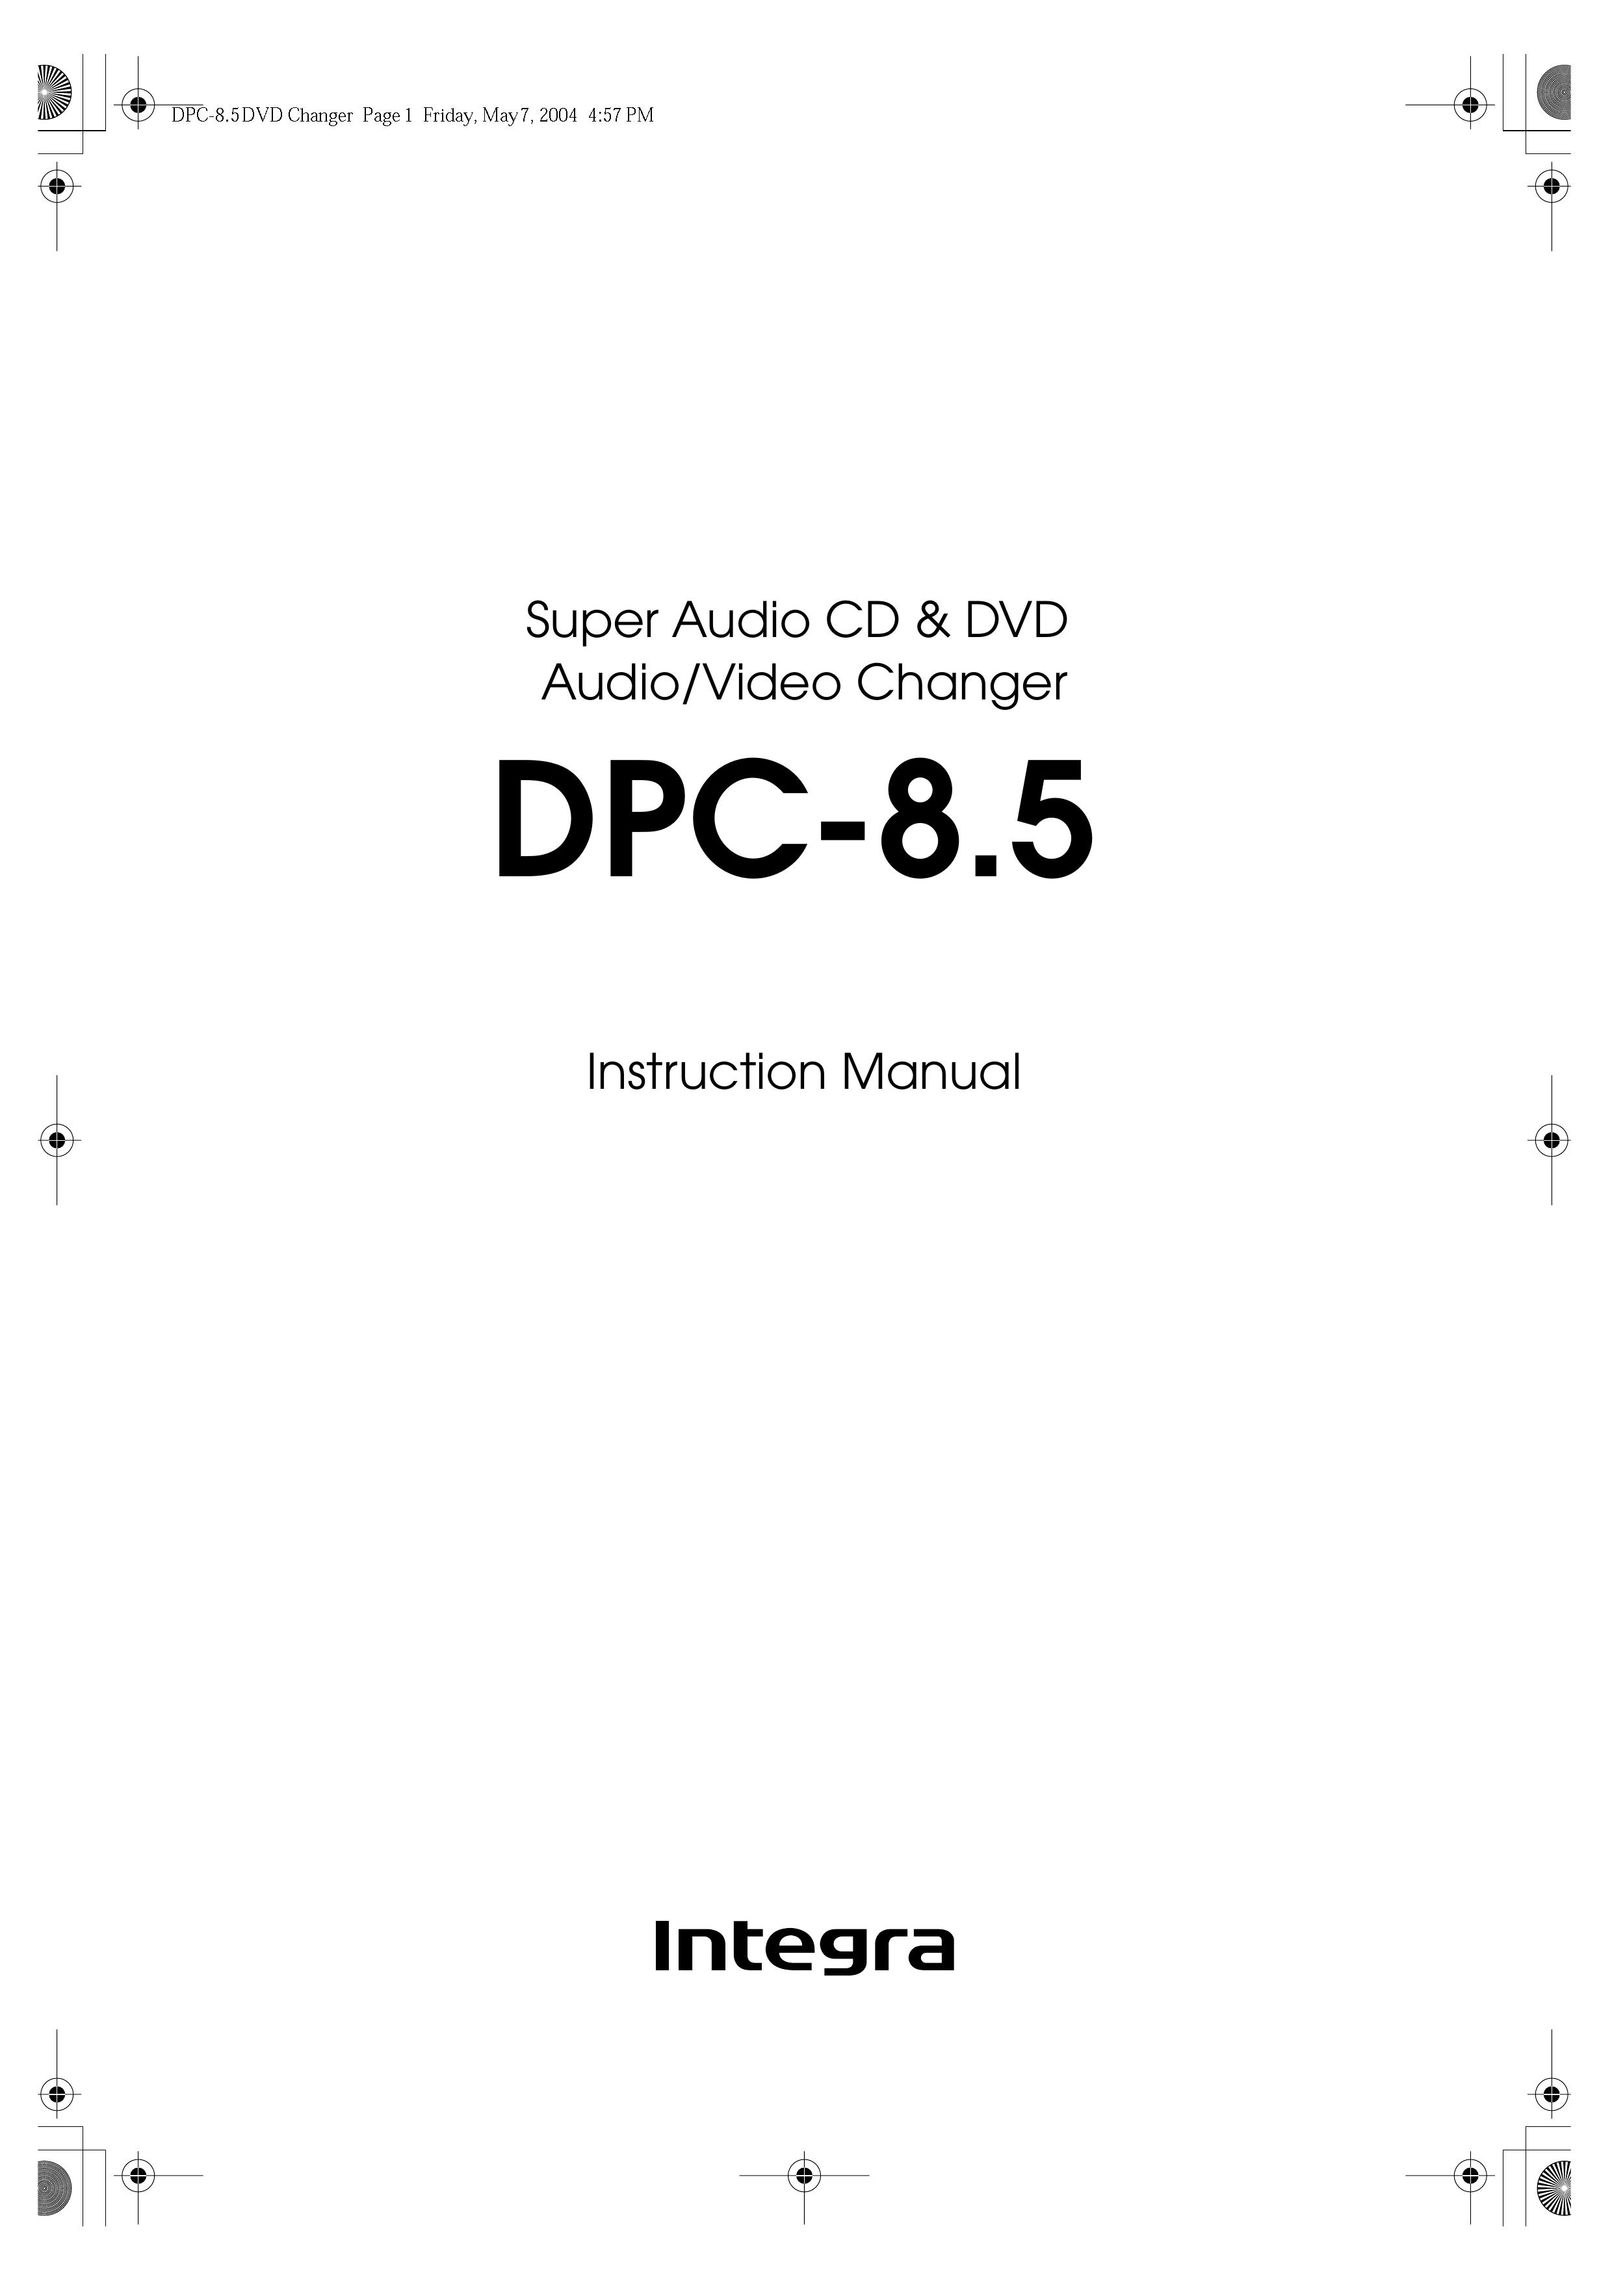 Integra DPC-8.5 DVD Player User Manual